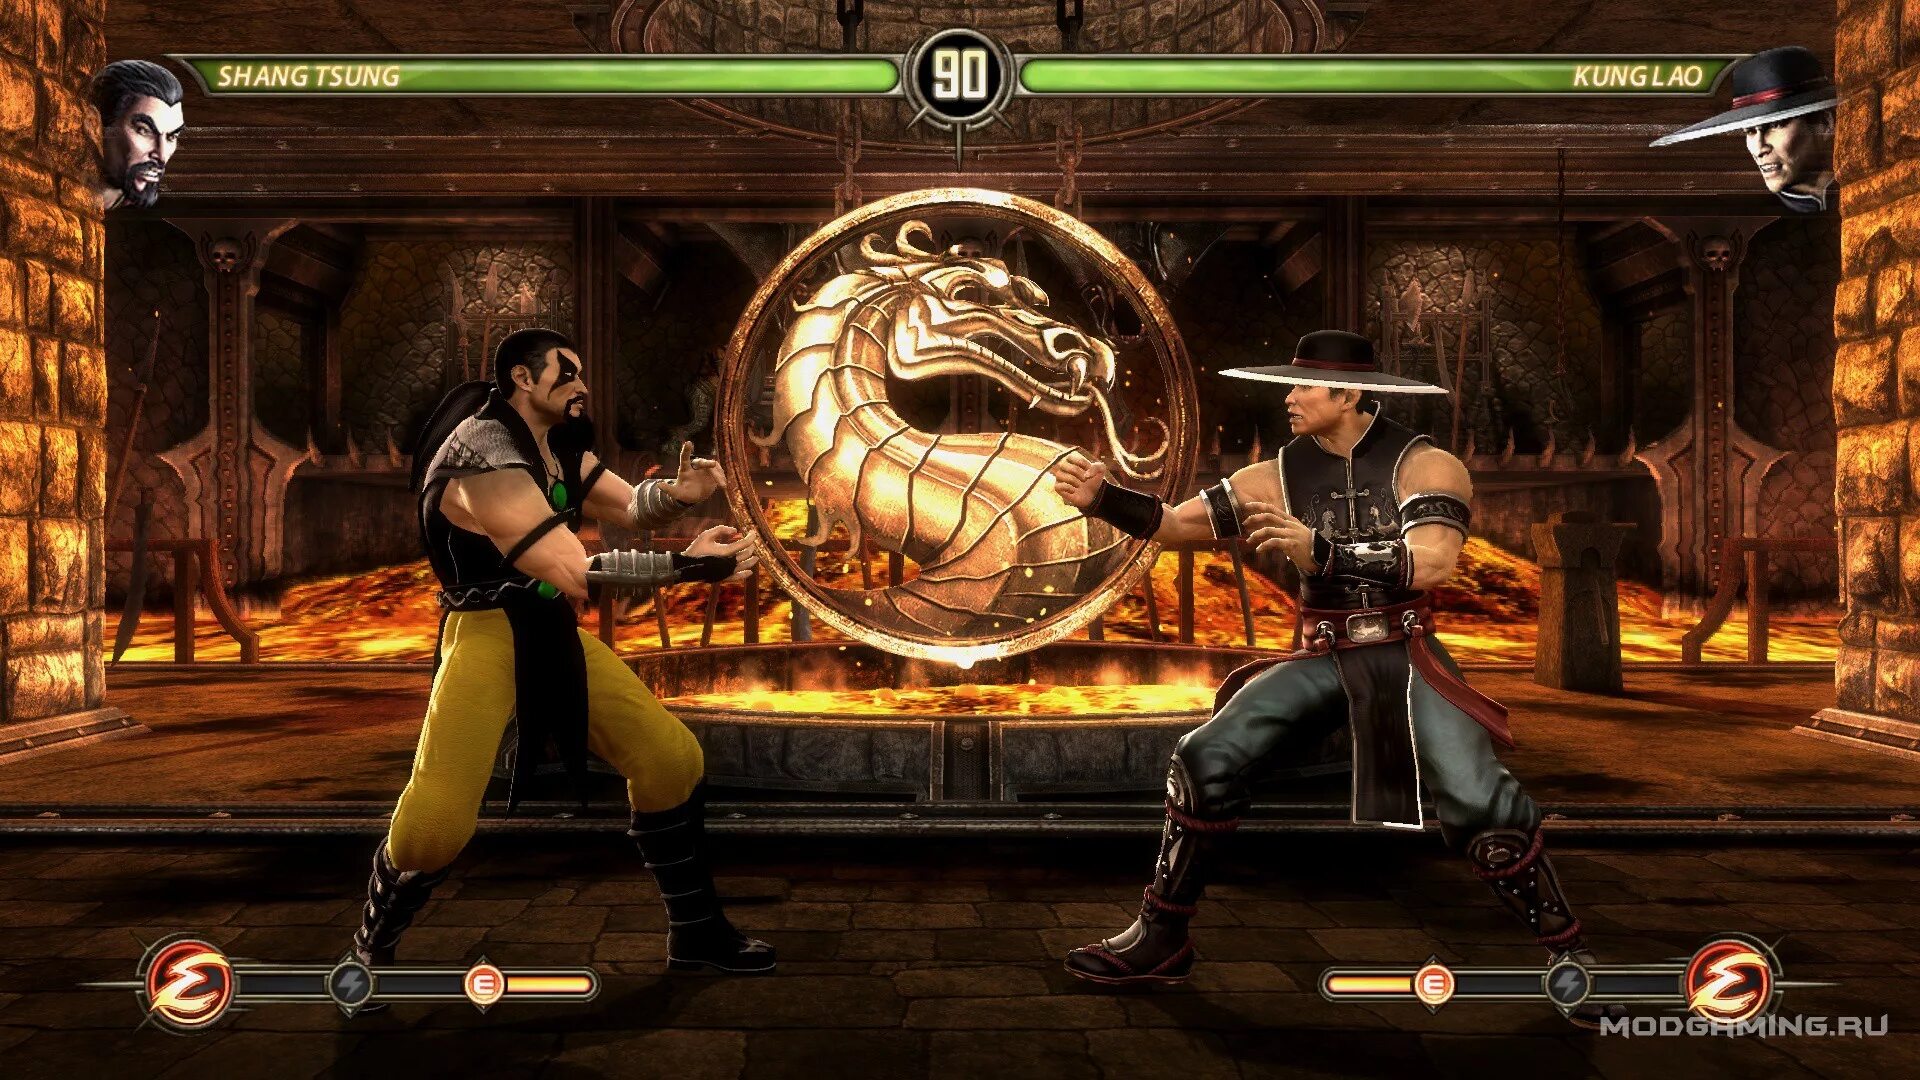 Мортал комбат игра кода. Шанг Цунг мортал комбат 3. Игра мортал комбат игра мортал комбат. Mortal Mortal Kombat 3 Shang Tsung. Mortal Kombat 2002.